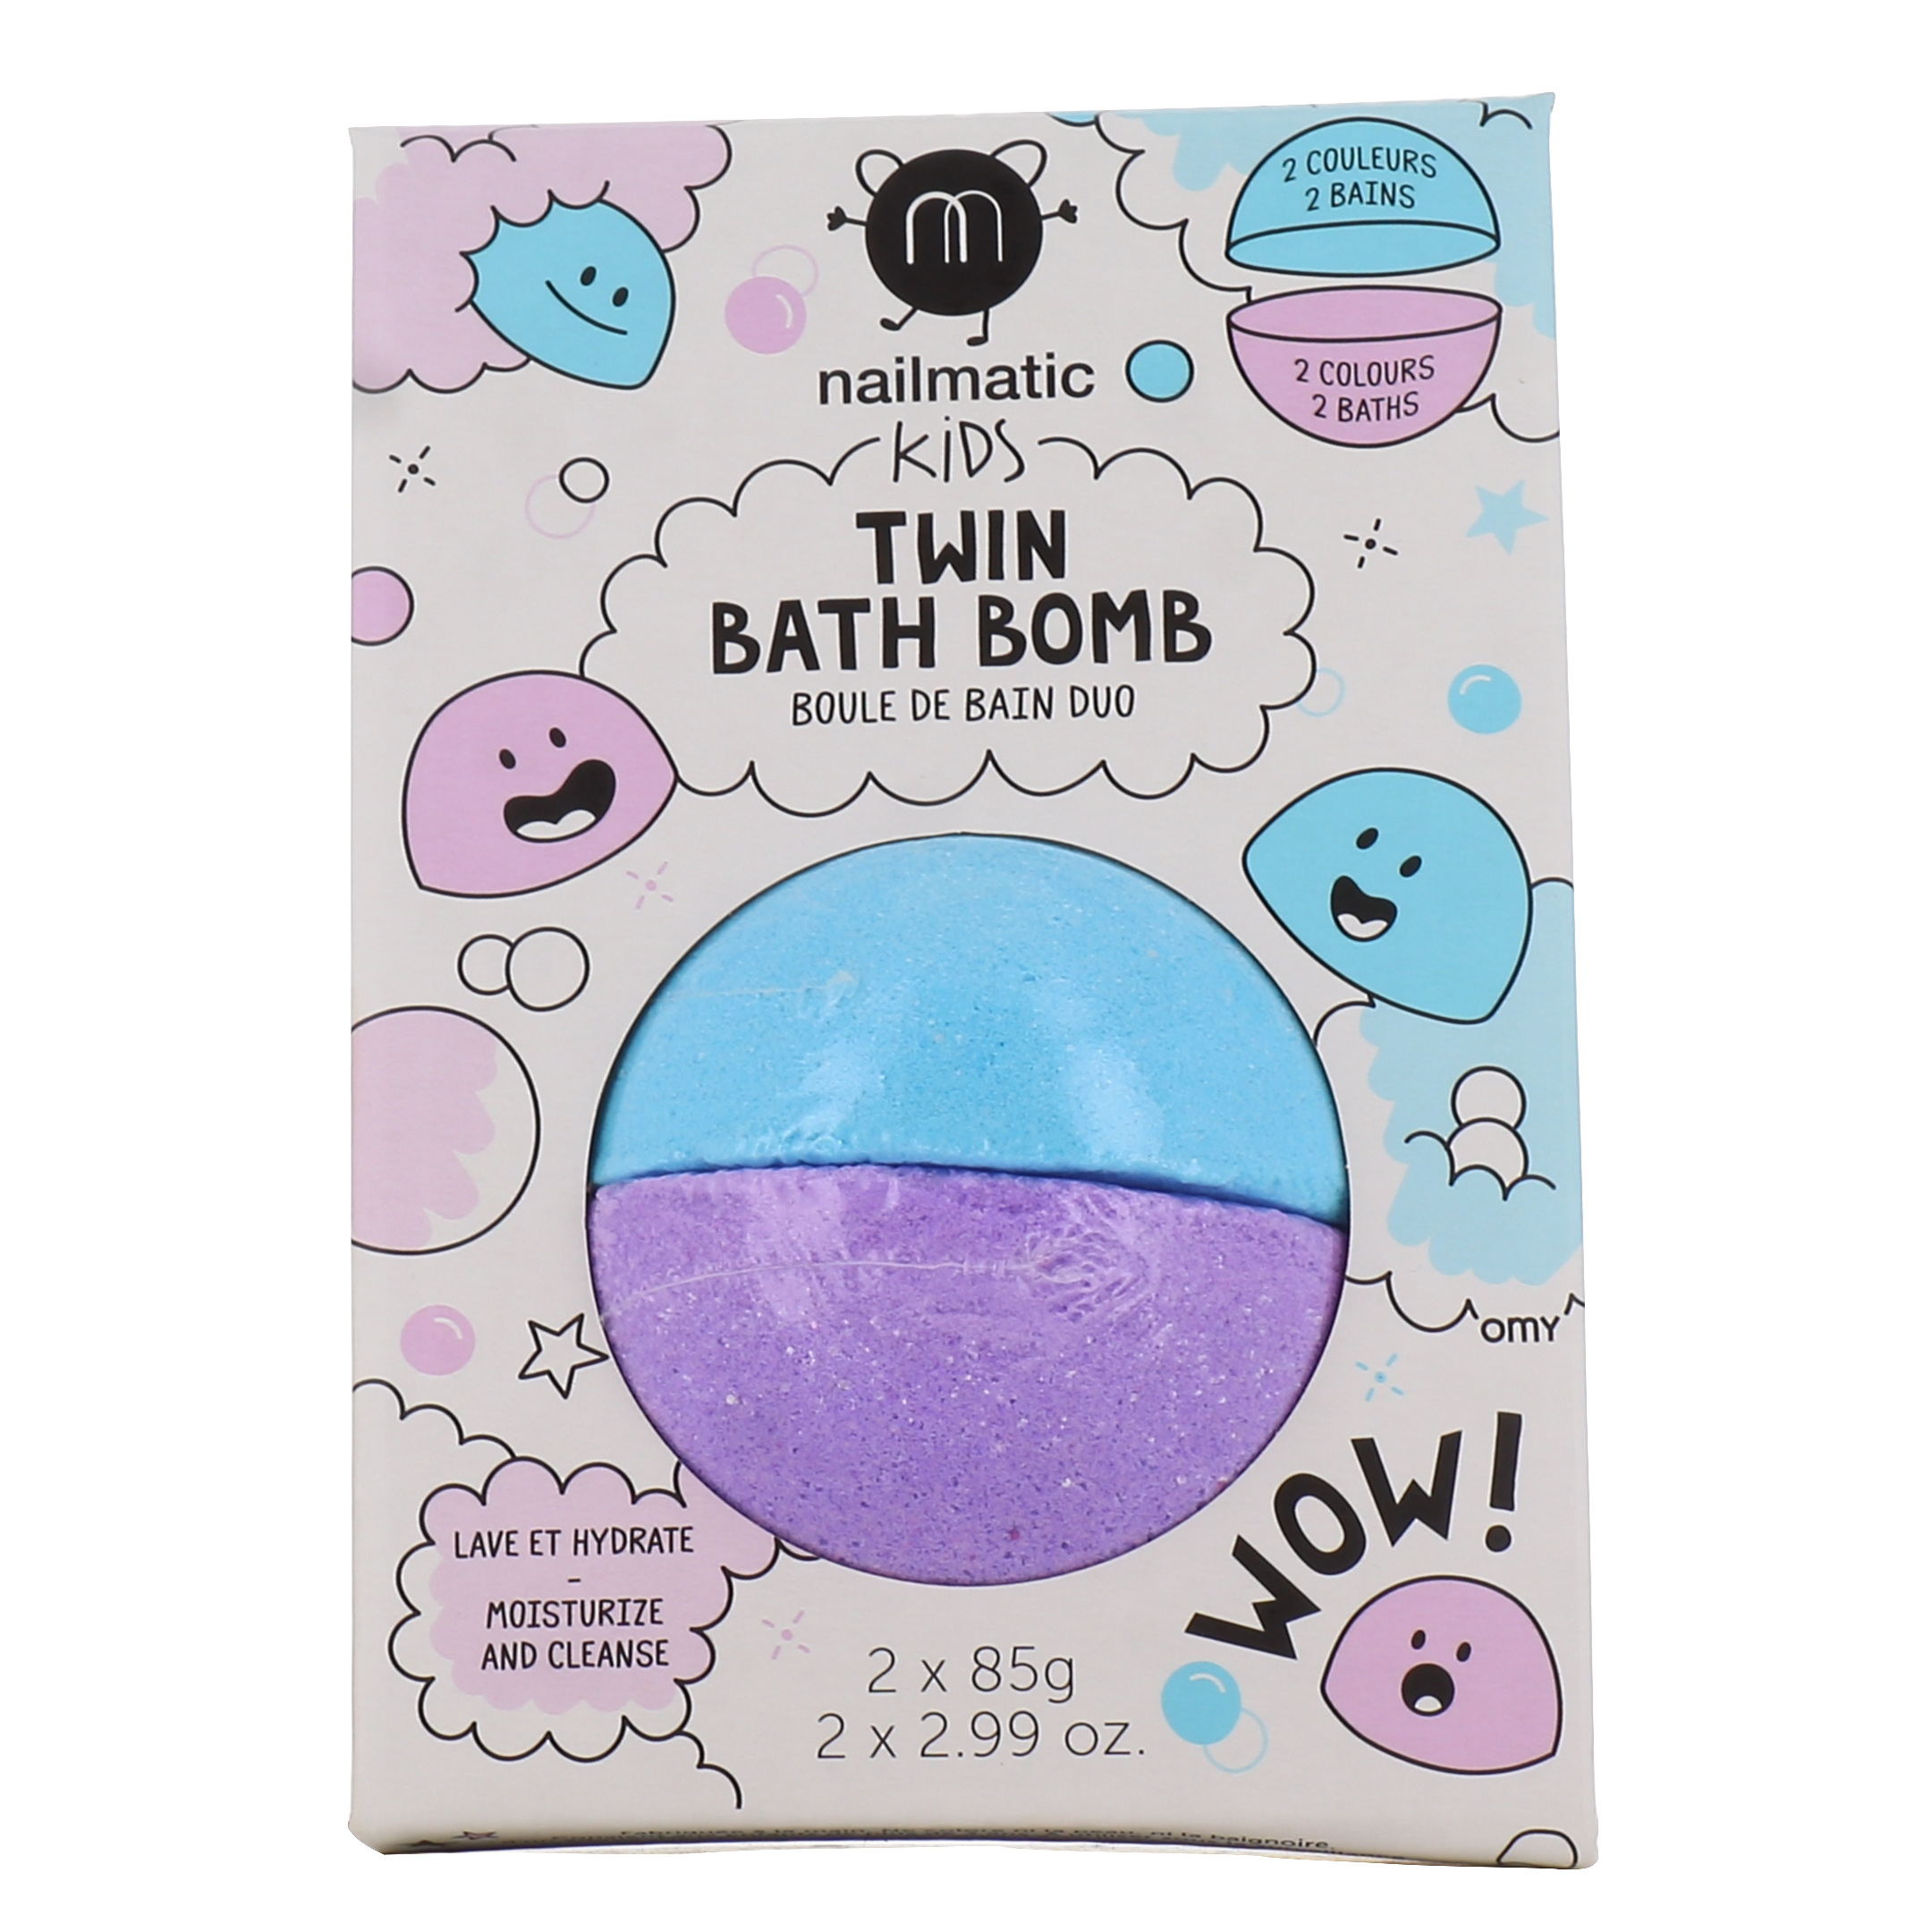 Boule de bain duo Nailmatic Kids - Twin Bath Bomb